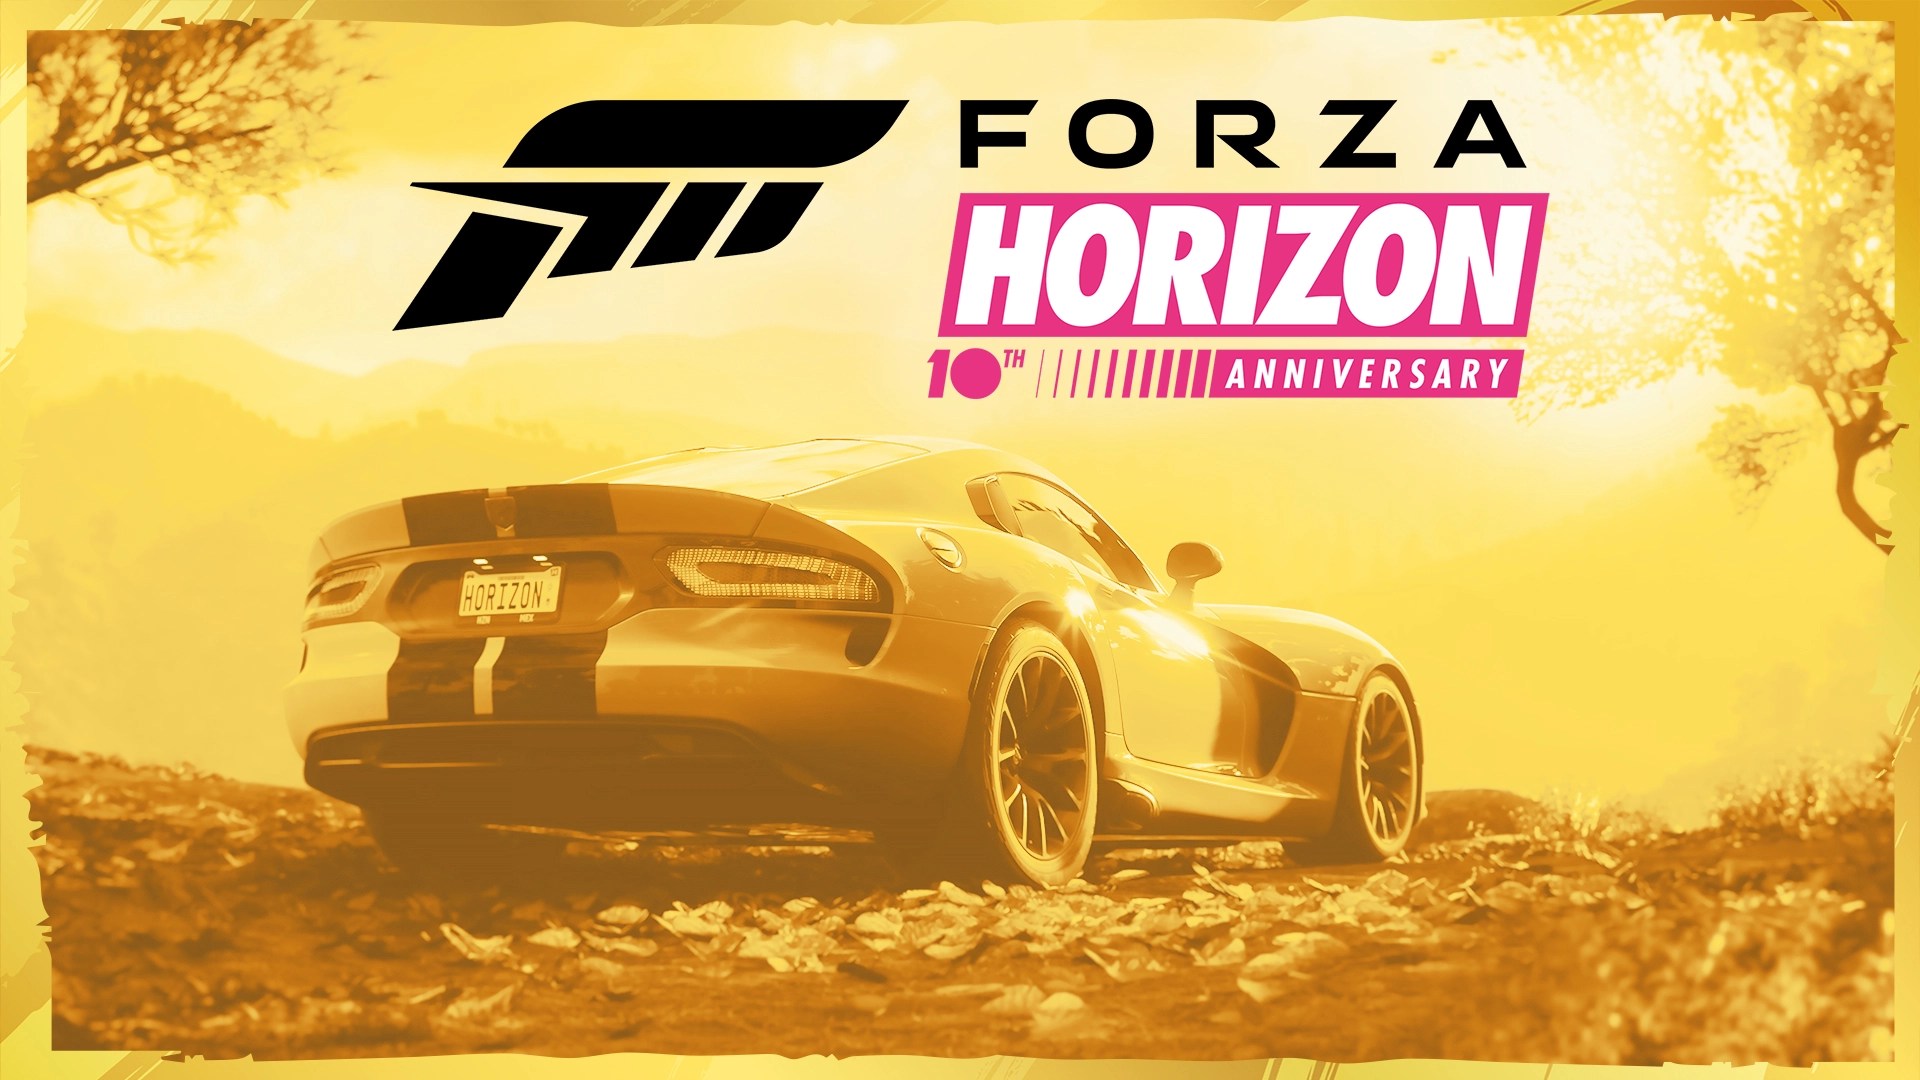 Forza Horizon Anniversary art